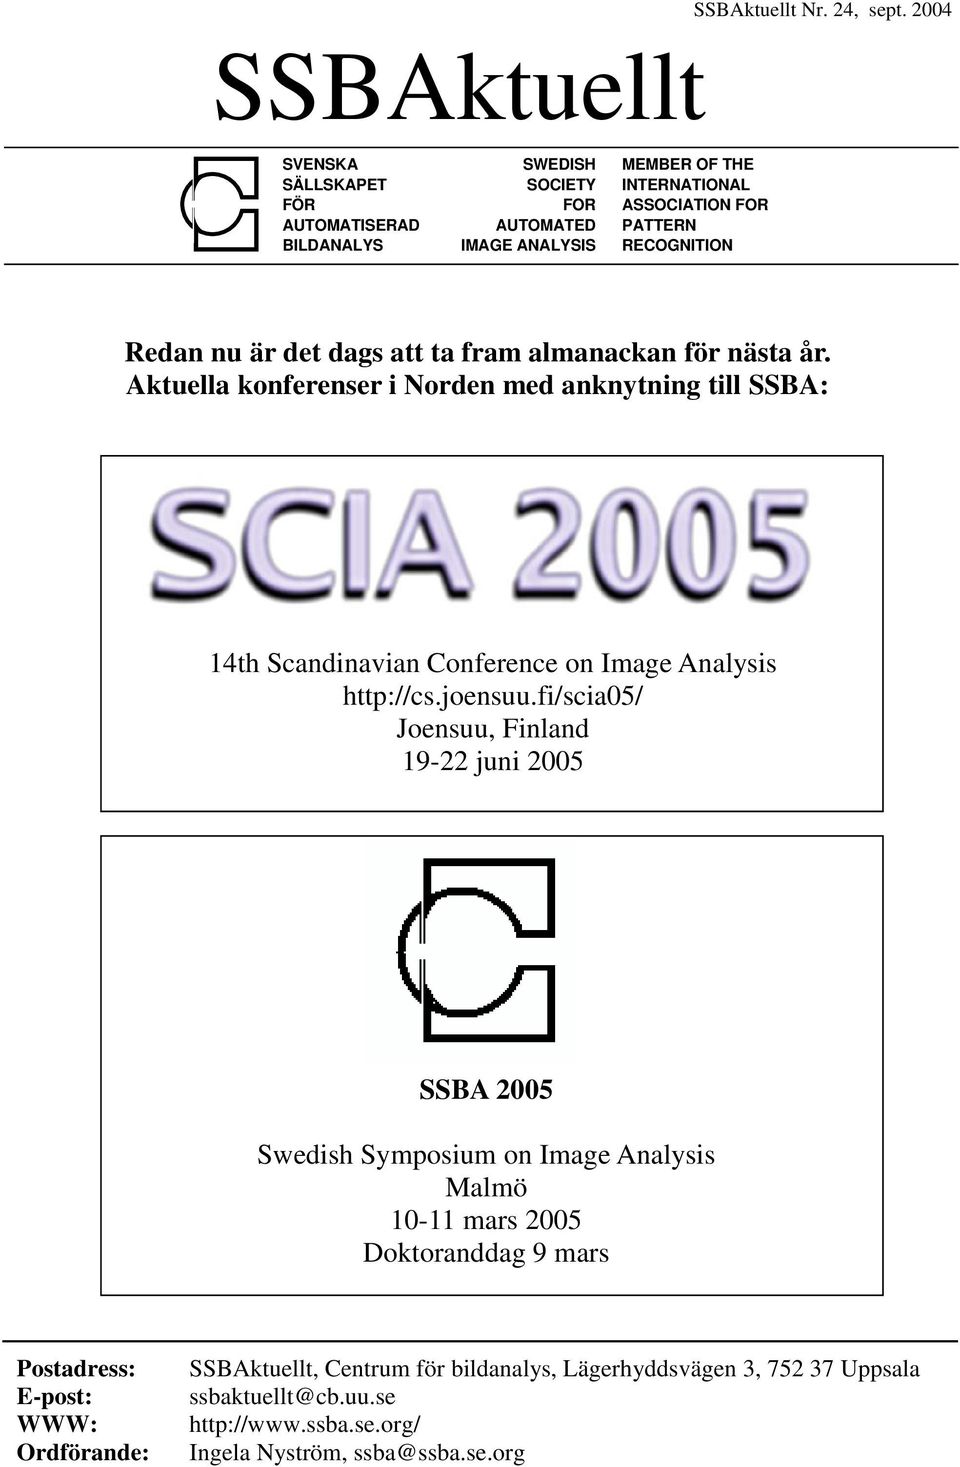 det dags att ta fram almanackan för nästa år. Aktuella konferenser i Norden med anknytning till SSBA: 14th Scandinavian Conference on Image Analysis http://cs.joensuu.